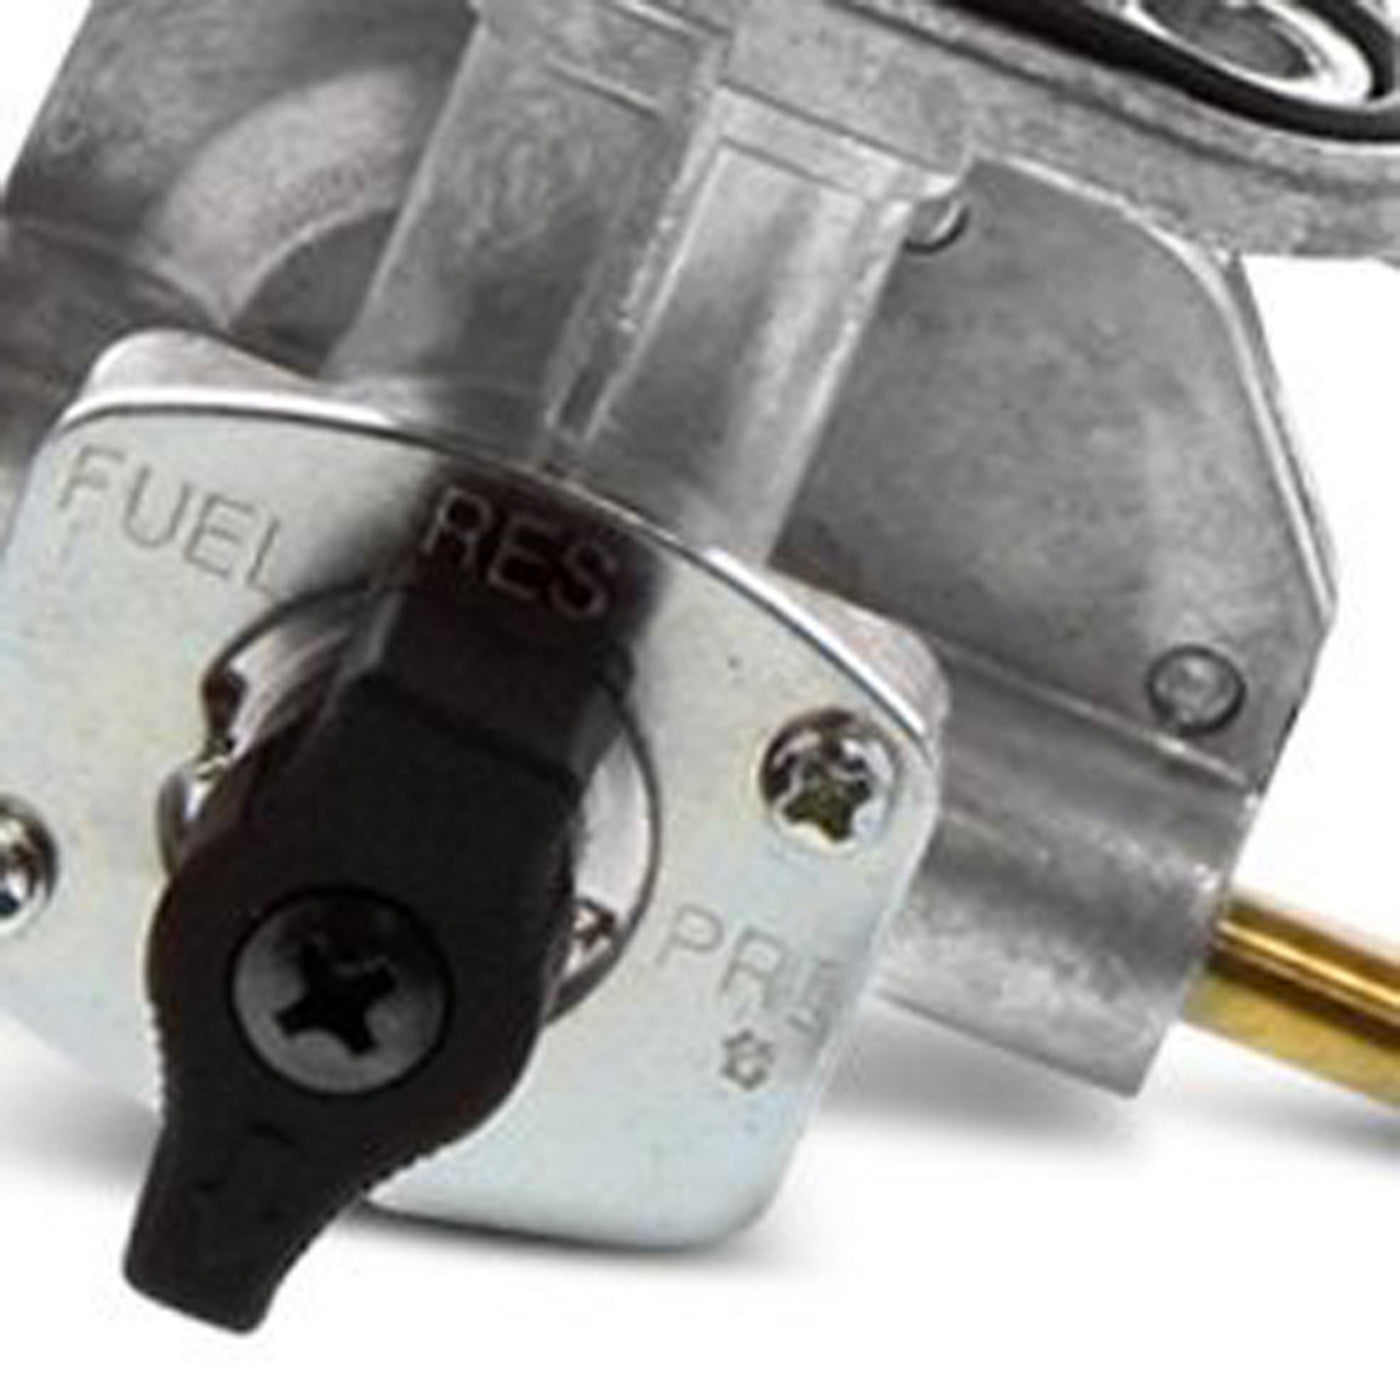 Fuel Star FS101-0138 Fuel Valve Kit #FS101-0138